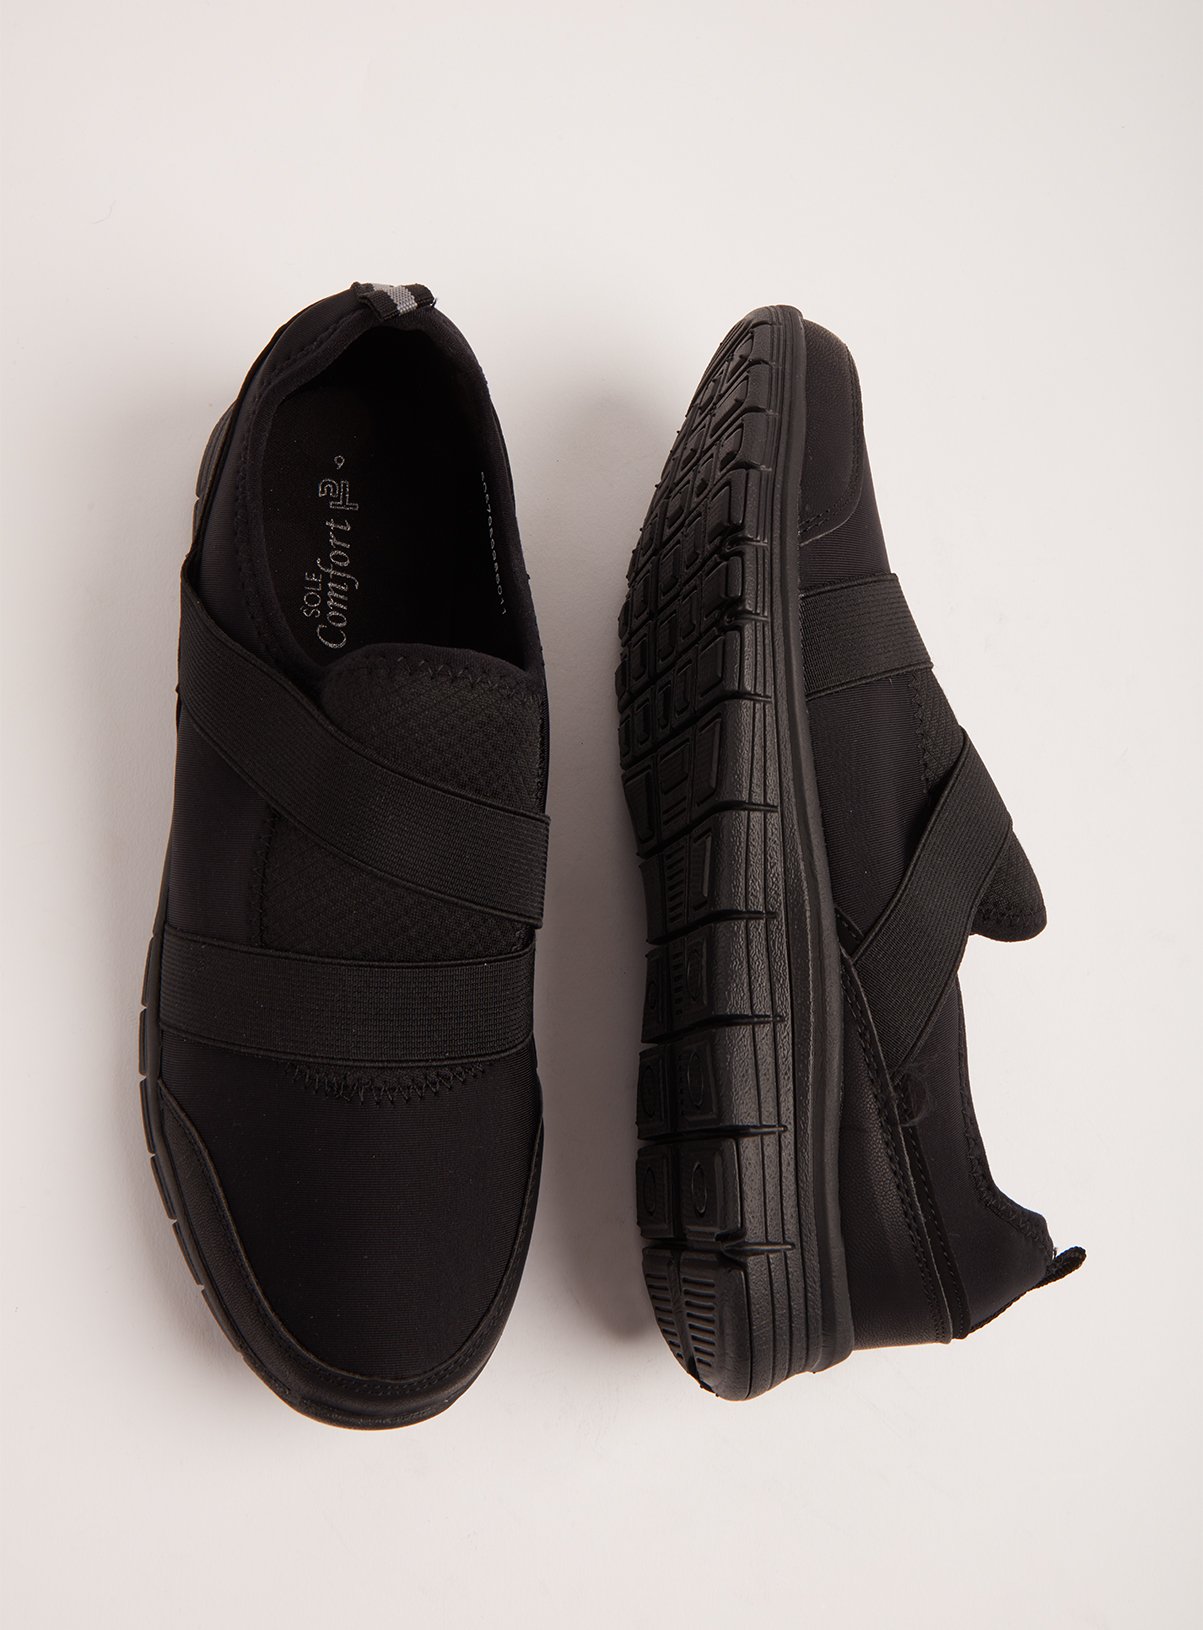 comfy black slip on shoes